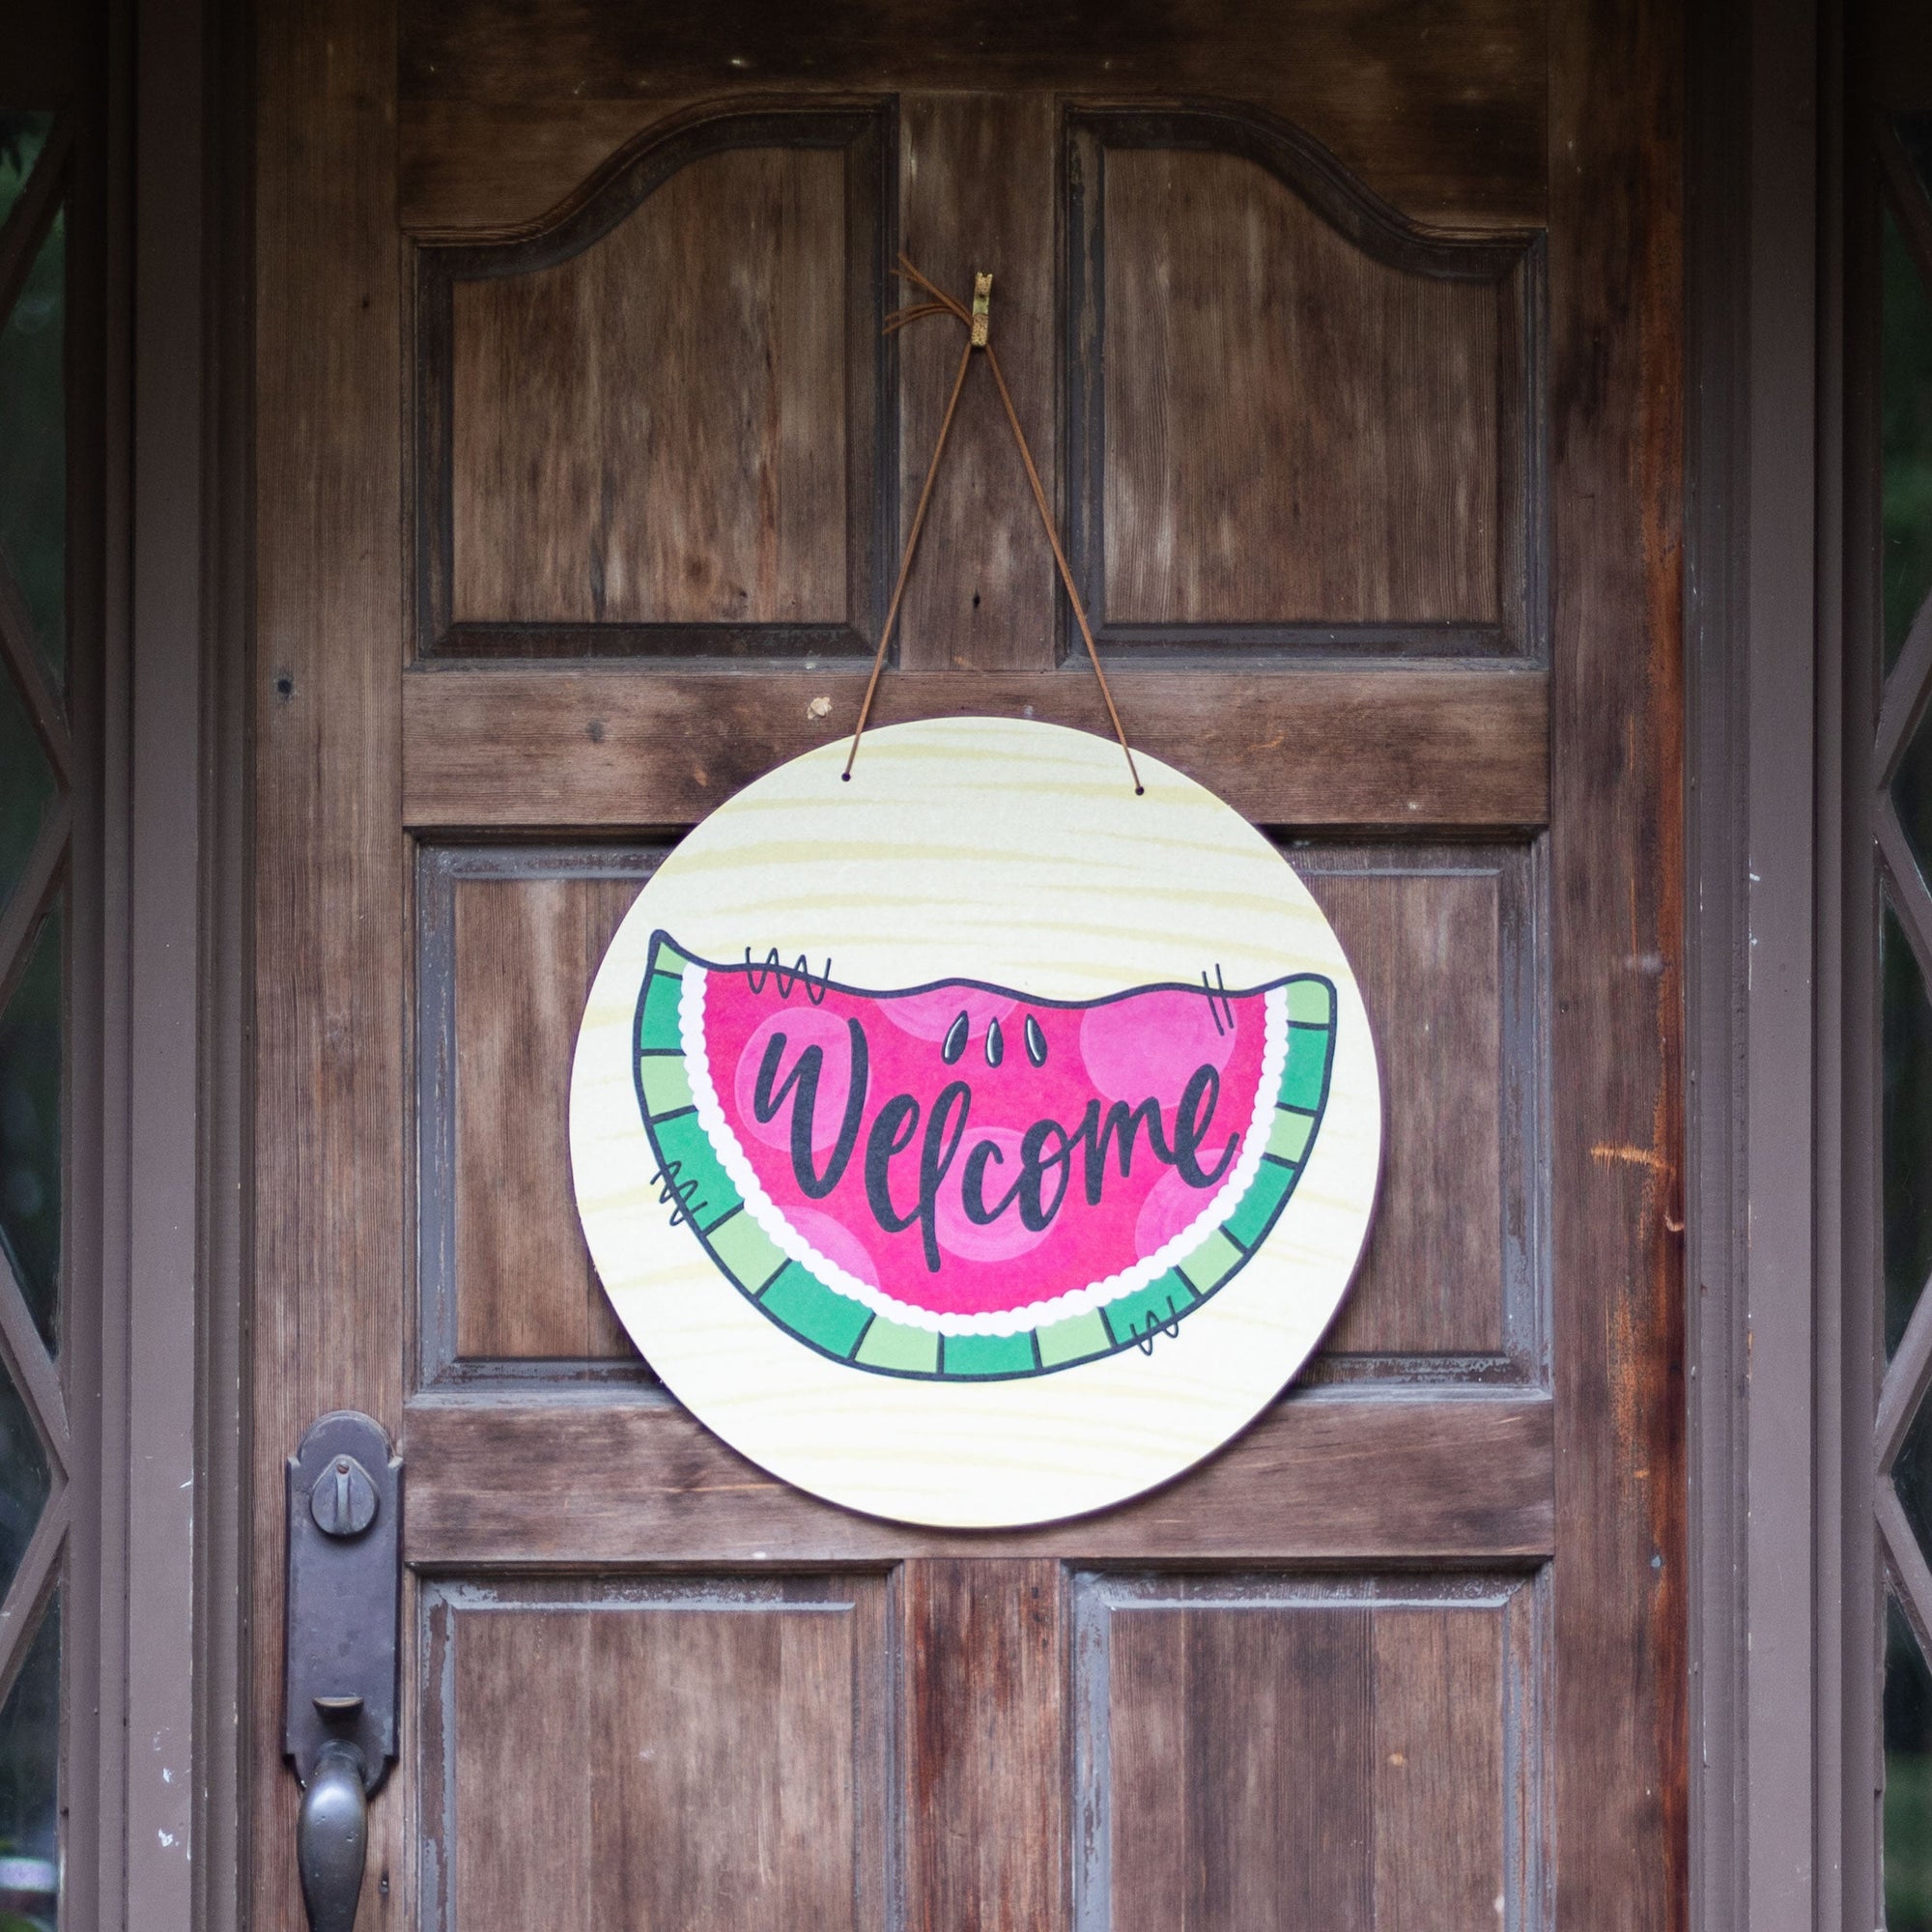 Front View. Summer Door Hanger, Welcome Watermelon Outdoor Ornament/Decor The WAREHOUSE Studio 